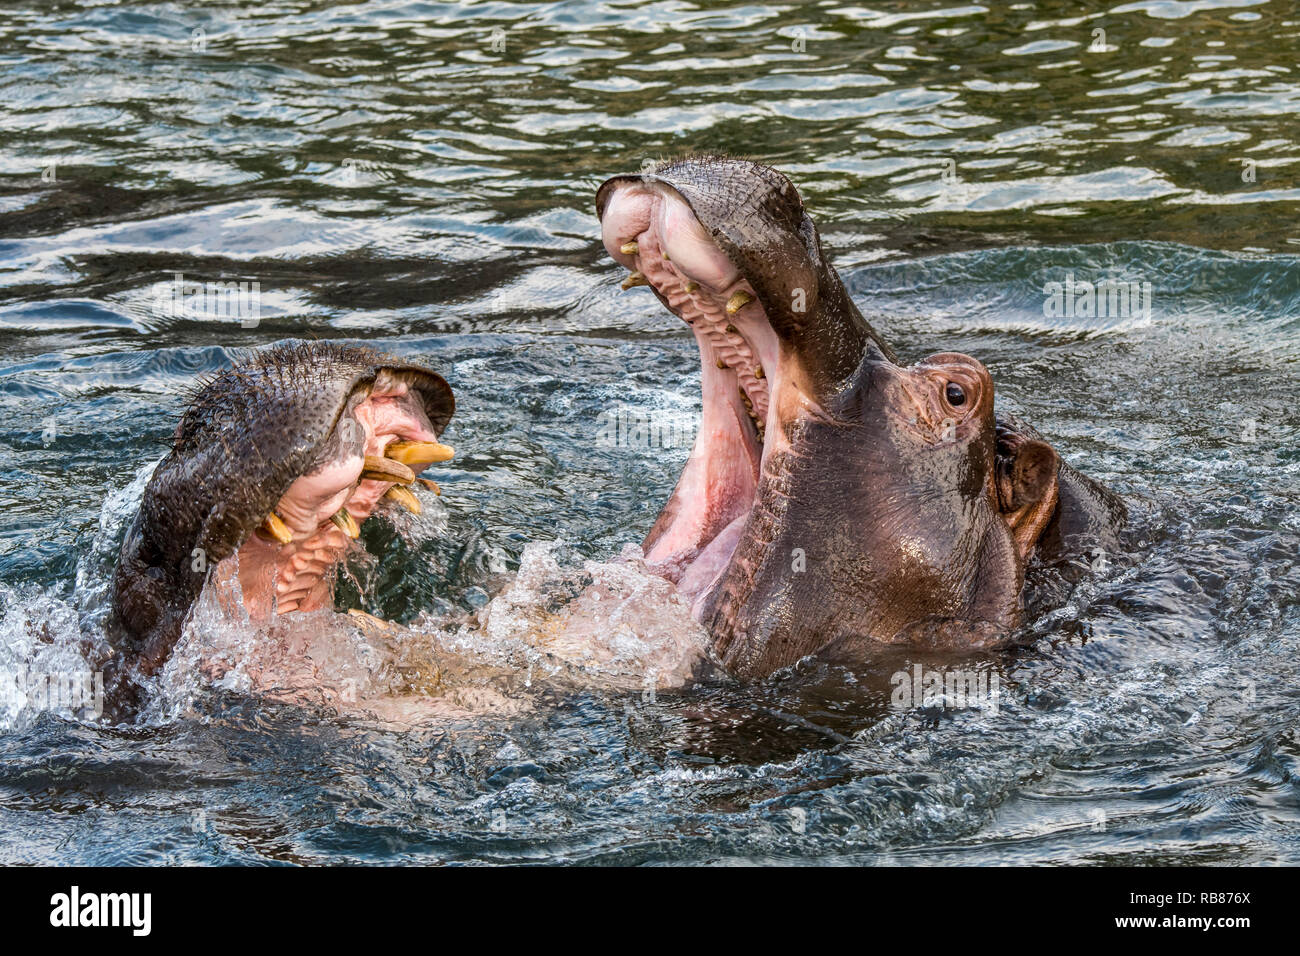 Los combates / hipopótamos los hipopótamos (Hippopotamus amphibius) en el lago mostrando dientes enormes y grandes colmillos caninos en boca hambriente Foto de stock